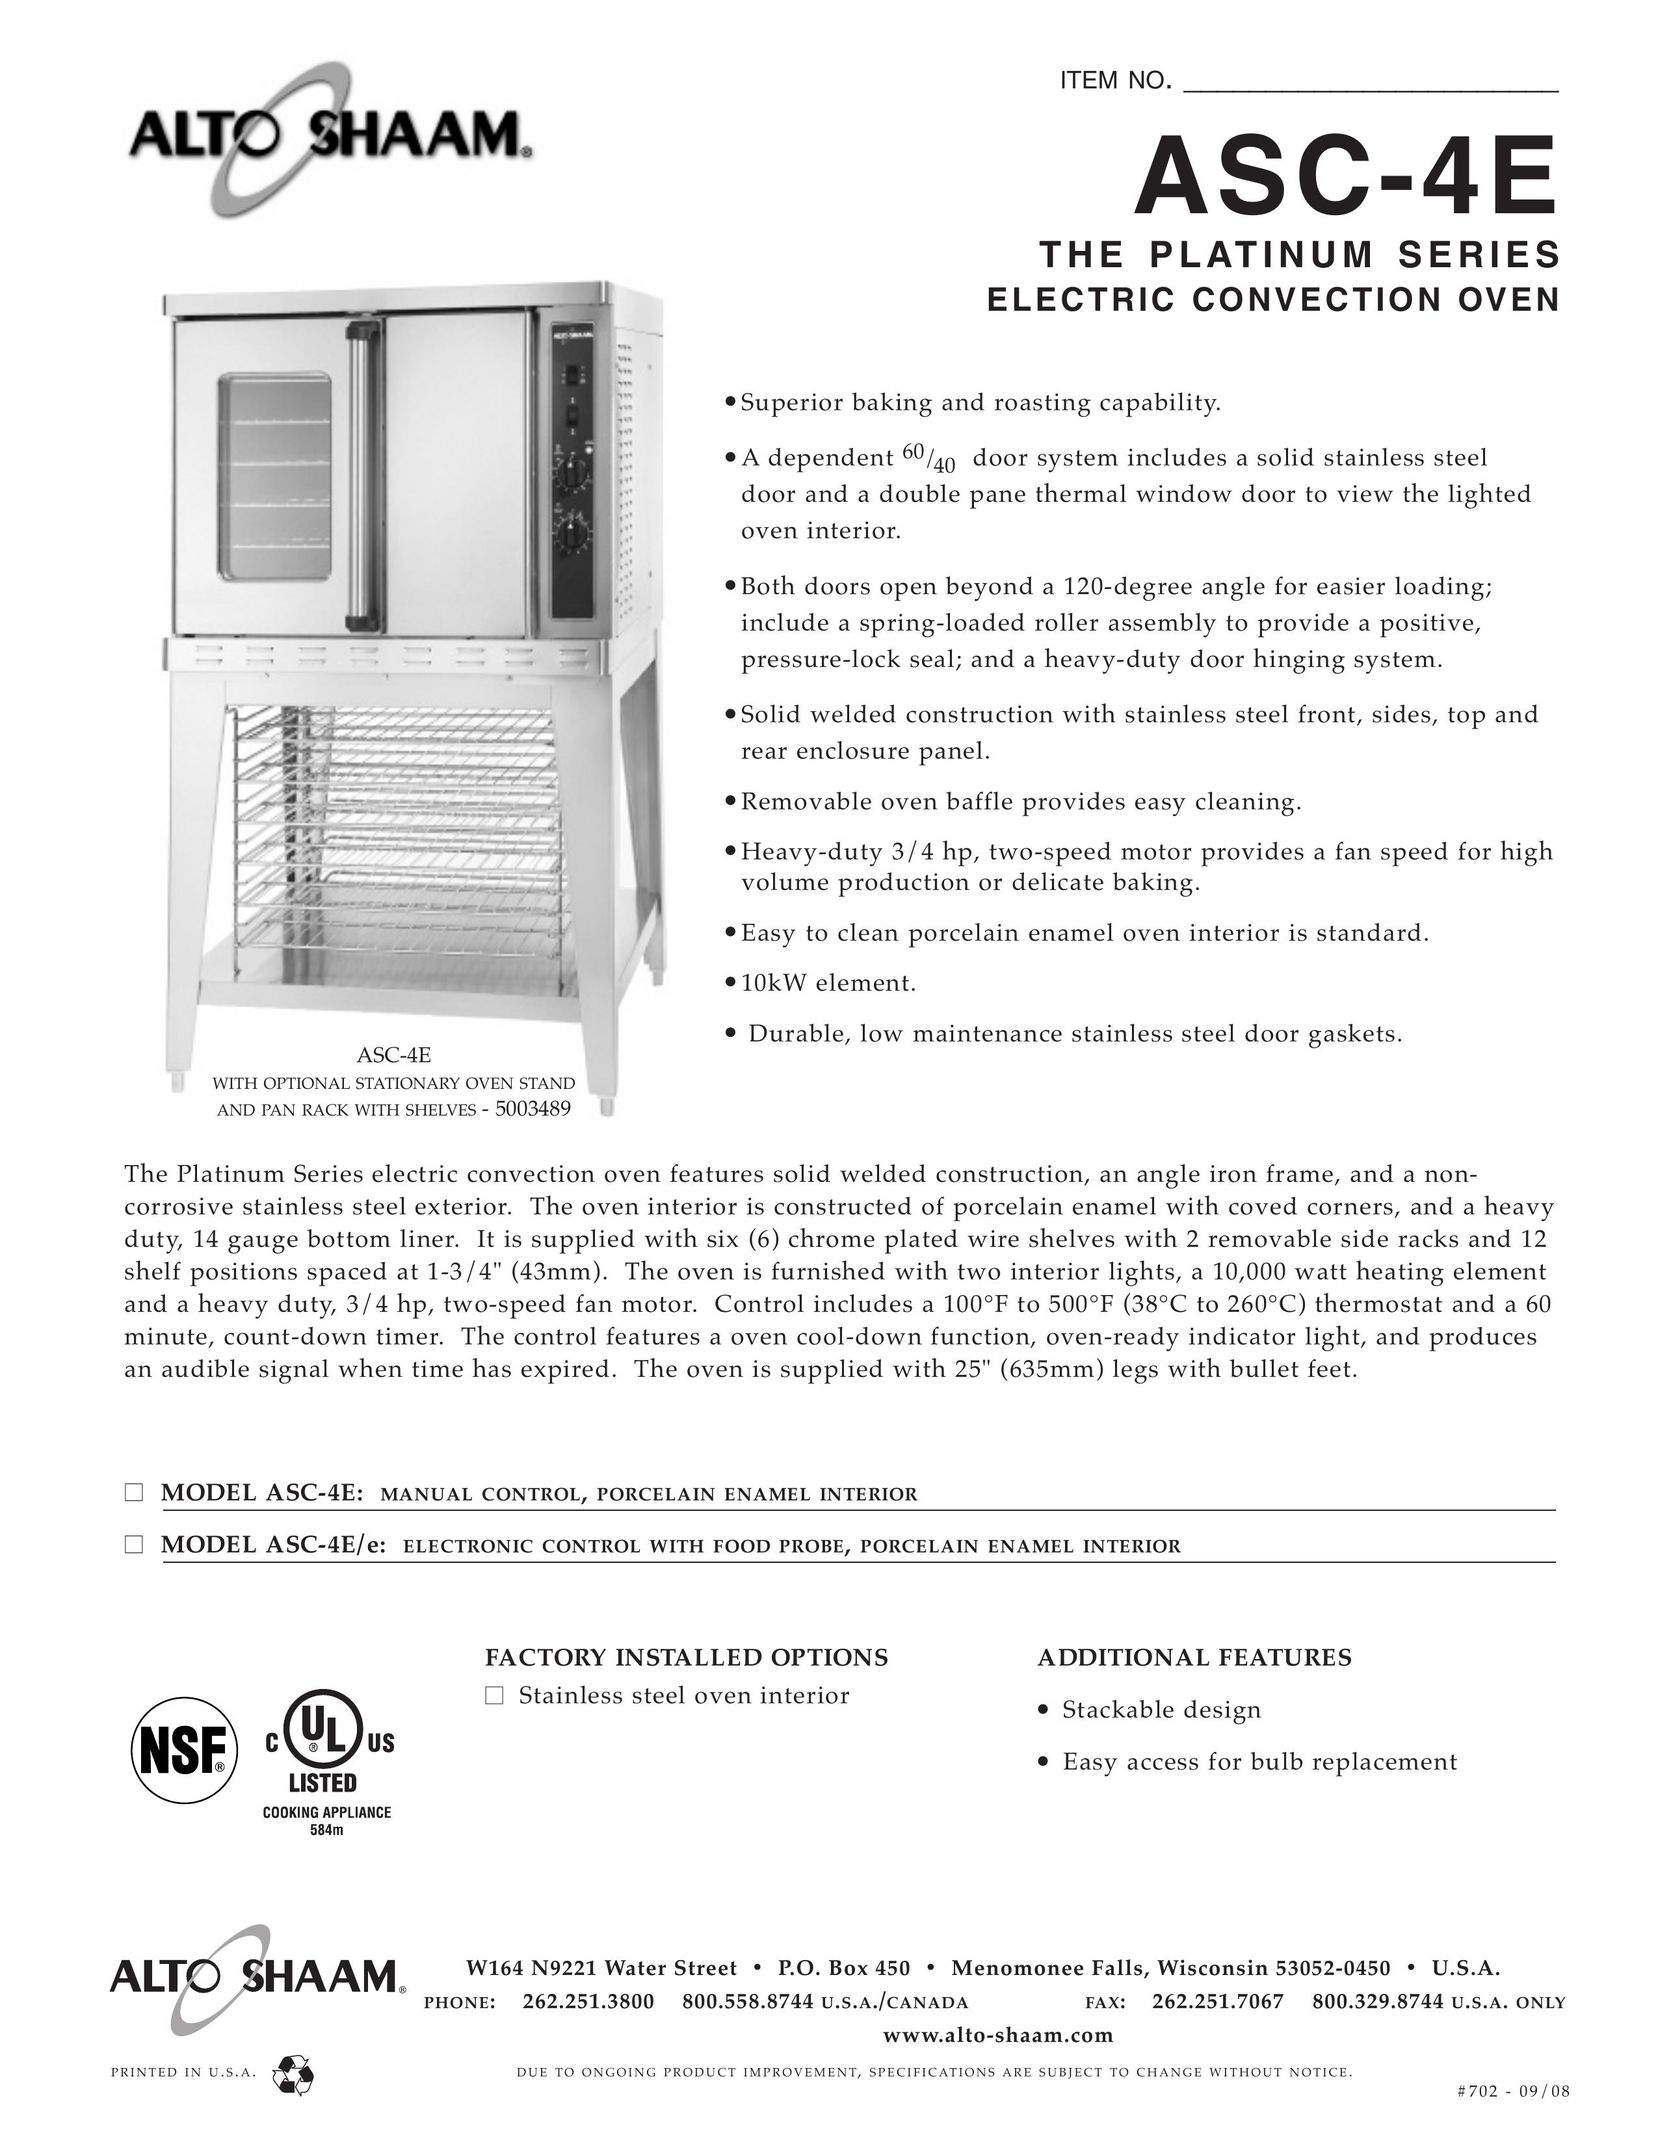 Alto-Shaam ASE-4E Convection Oven User Manual